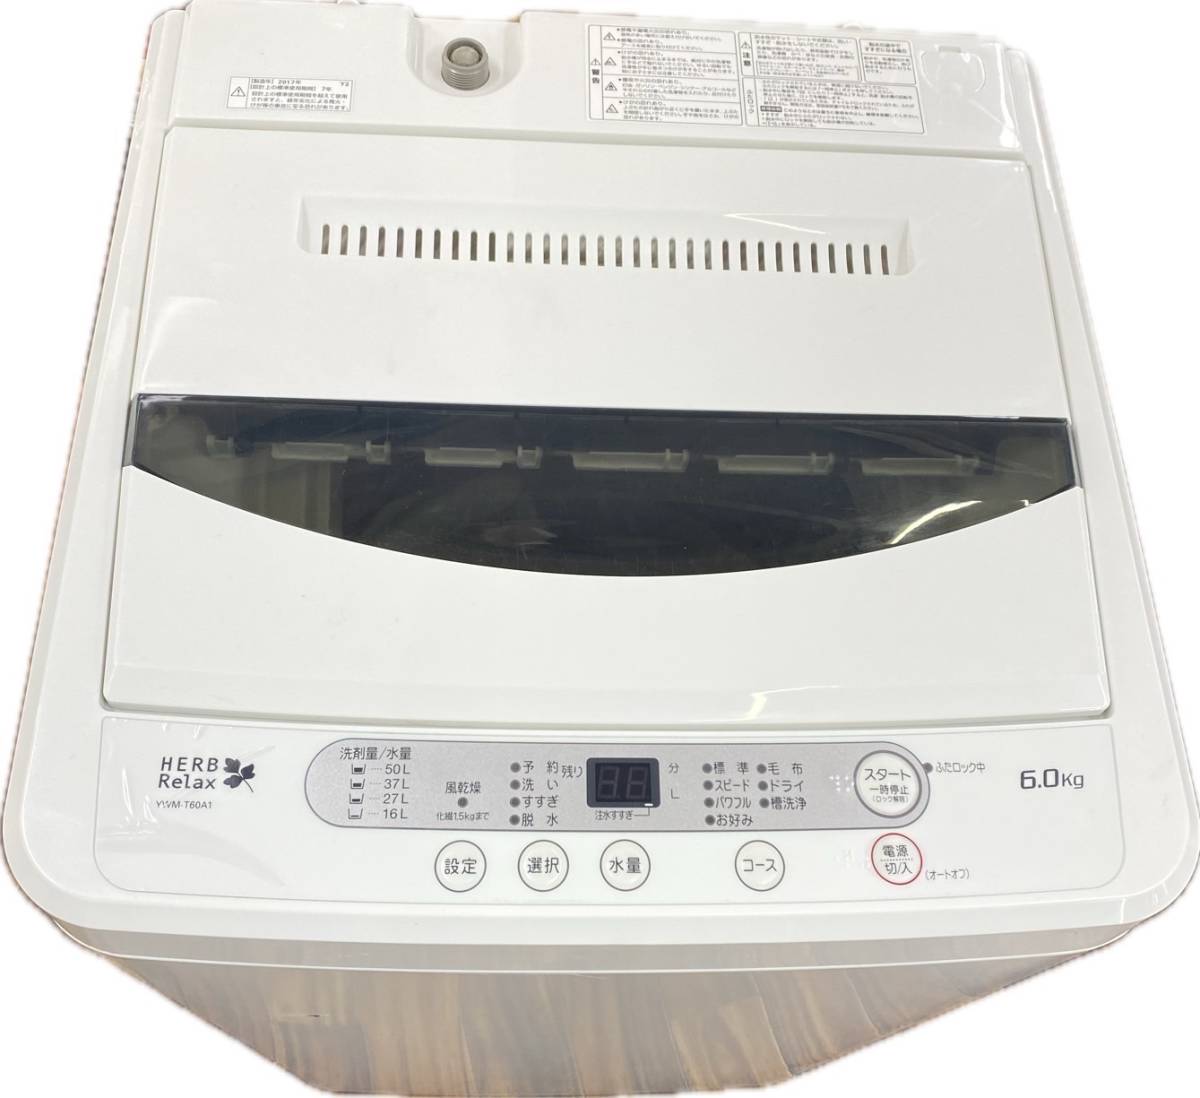 送料無料h55838 ヤマダ電機 YAMADA 全自動電気洗濯機 YWM-T60A1 6.0kg 2017年製 家庭用 小型 単身用_画像2